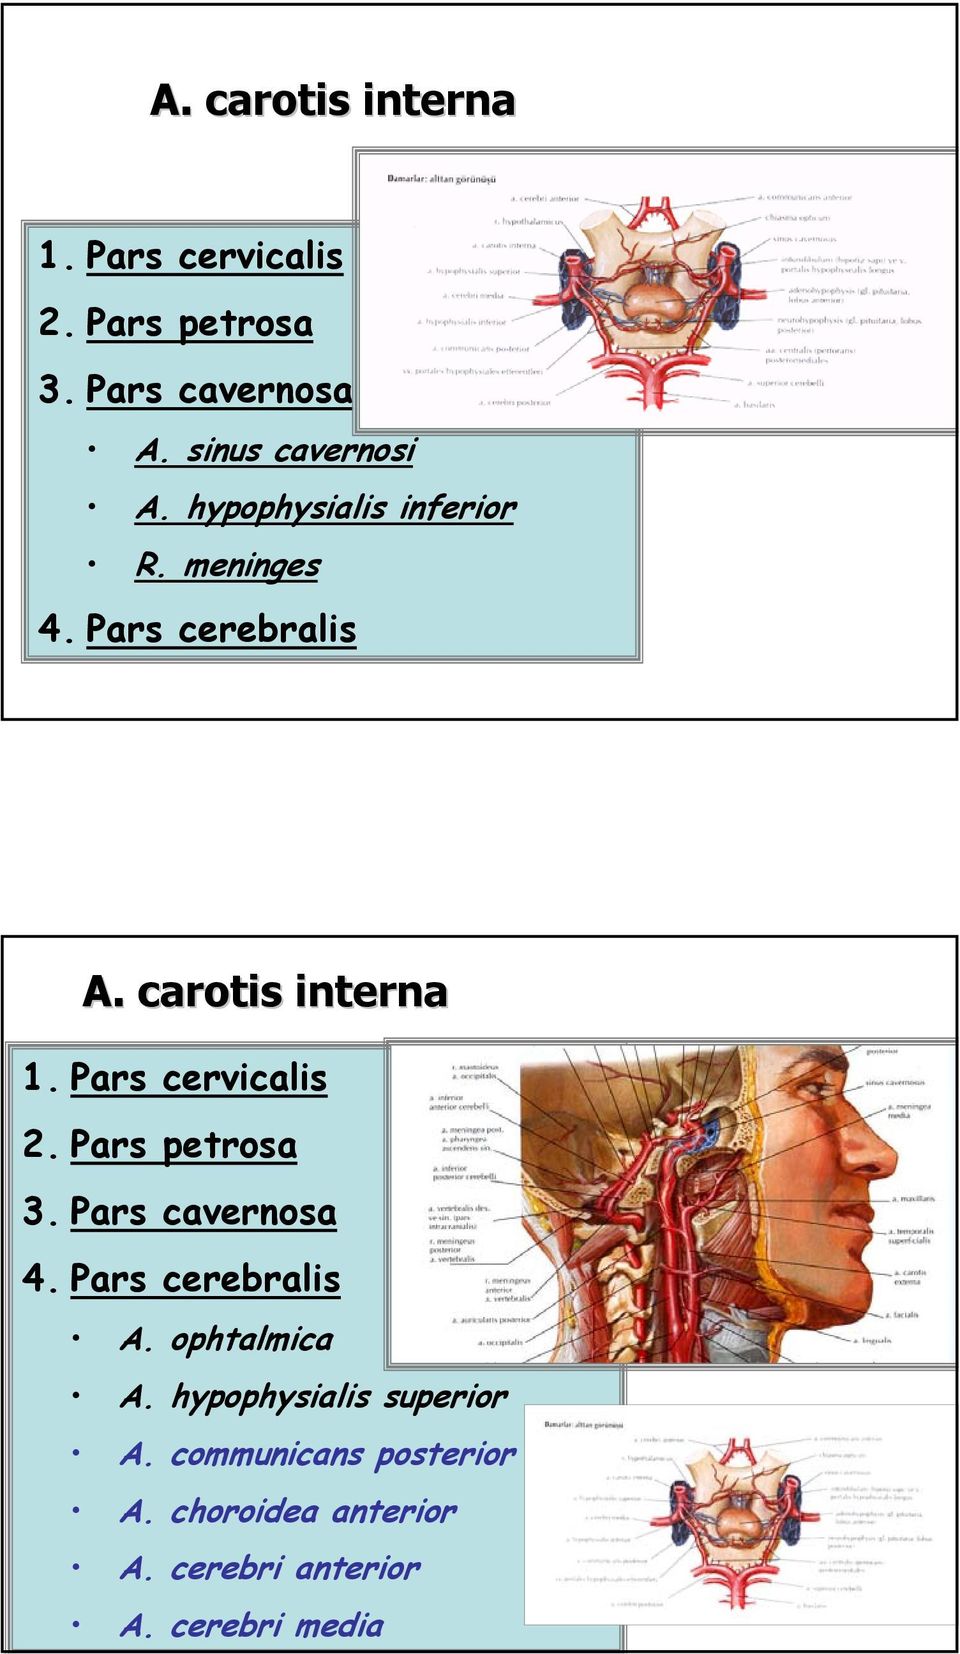 carotis interna 1. Pars cervicalis 2. Pars petrosa 3. Pars cavernosa 4. Pars cerebralis ò A.